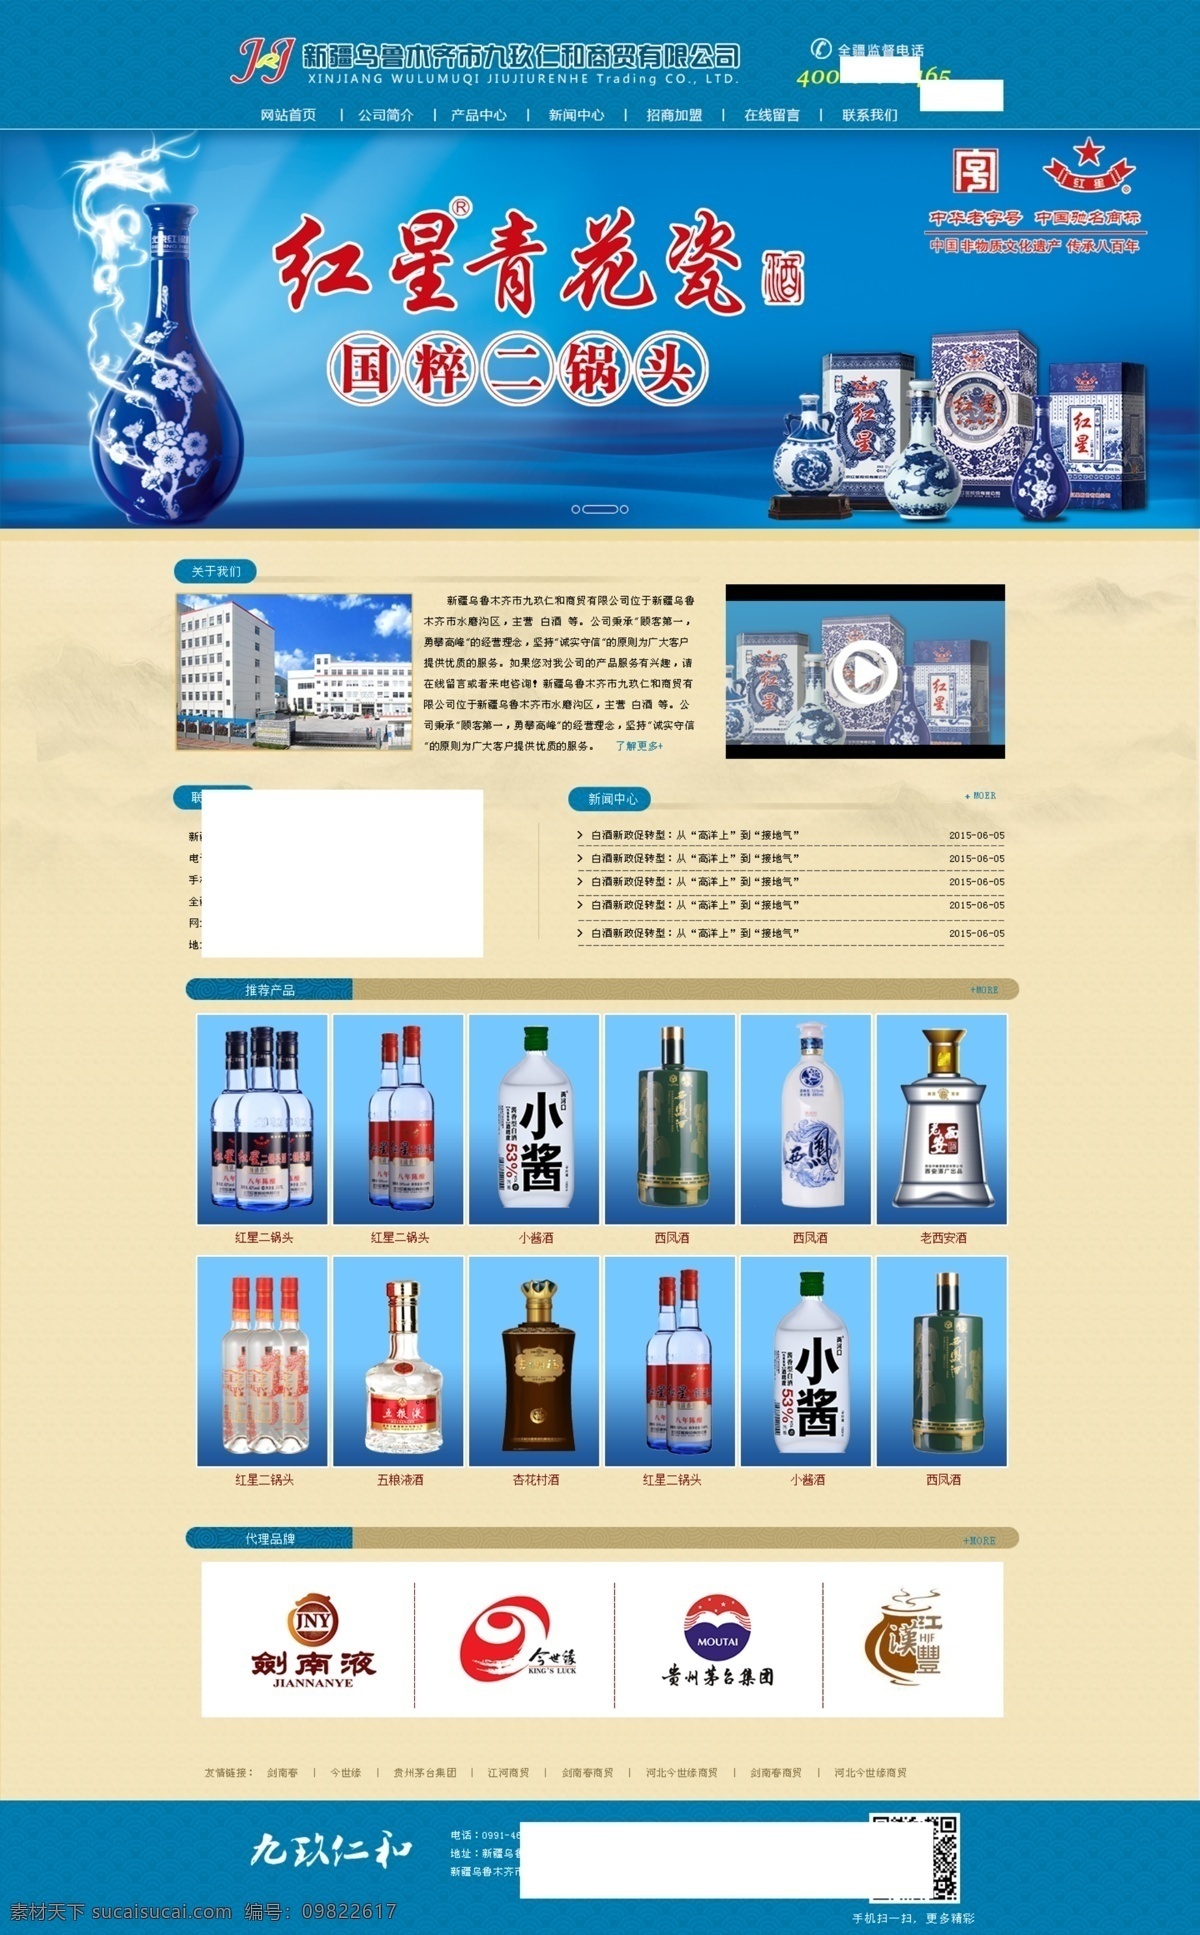 商贸 网站 效果图 白酒 首页 网站首页 web 界面设计 中文模板